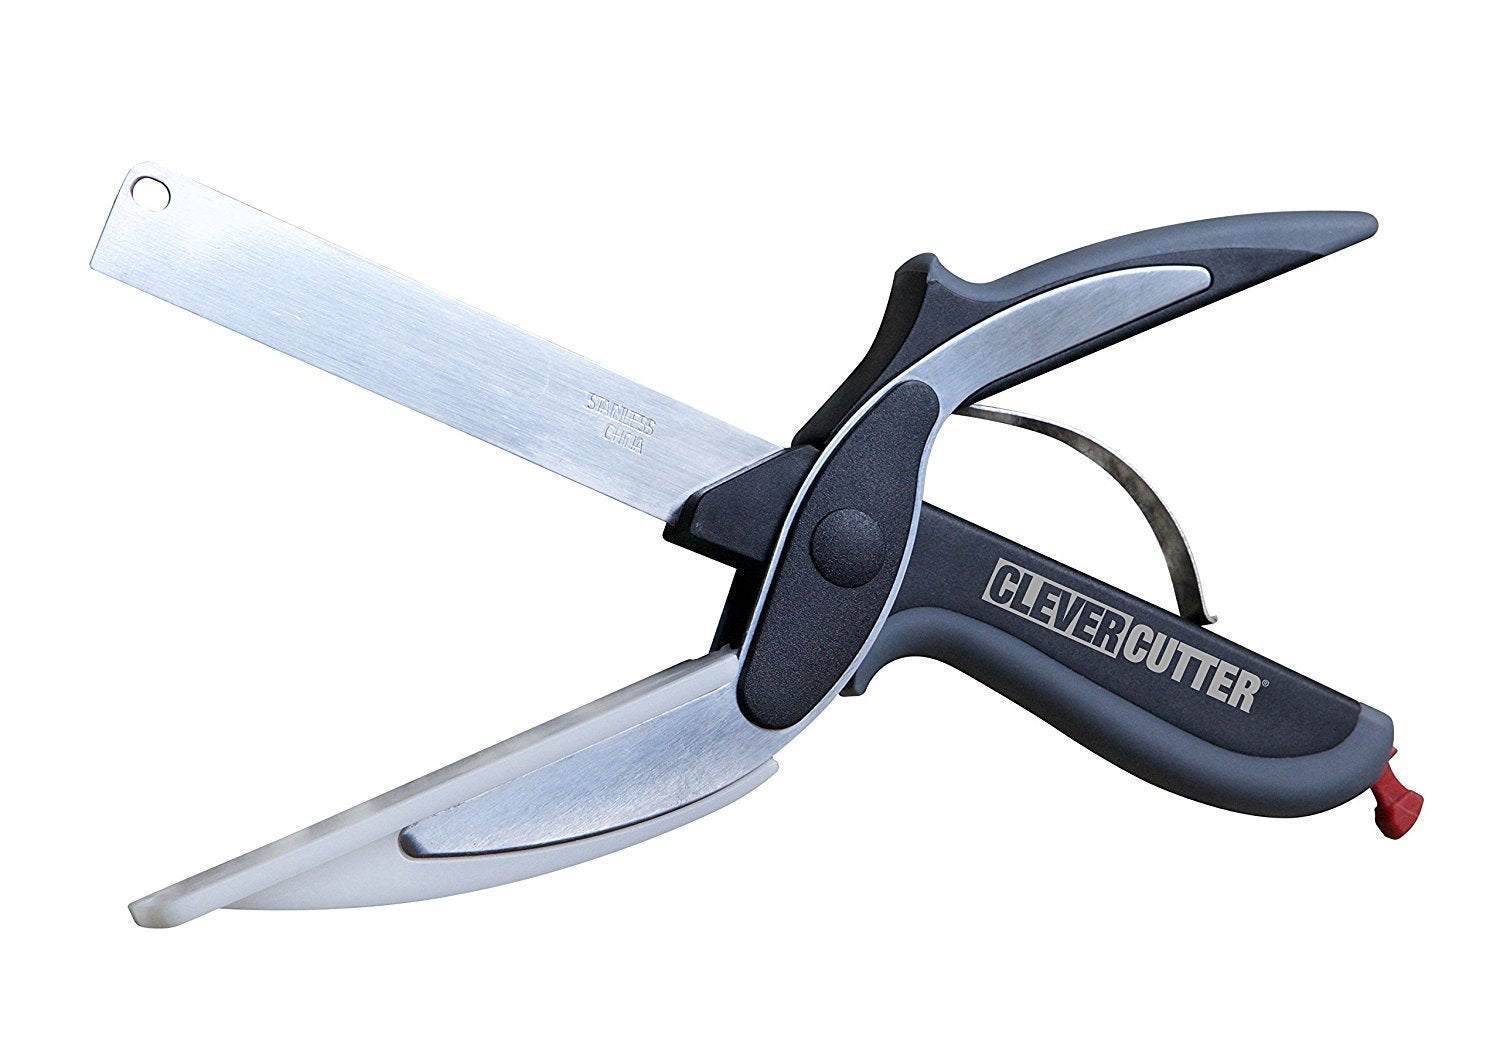 2-in-1 Clever Cutter Scissor